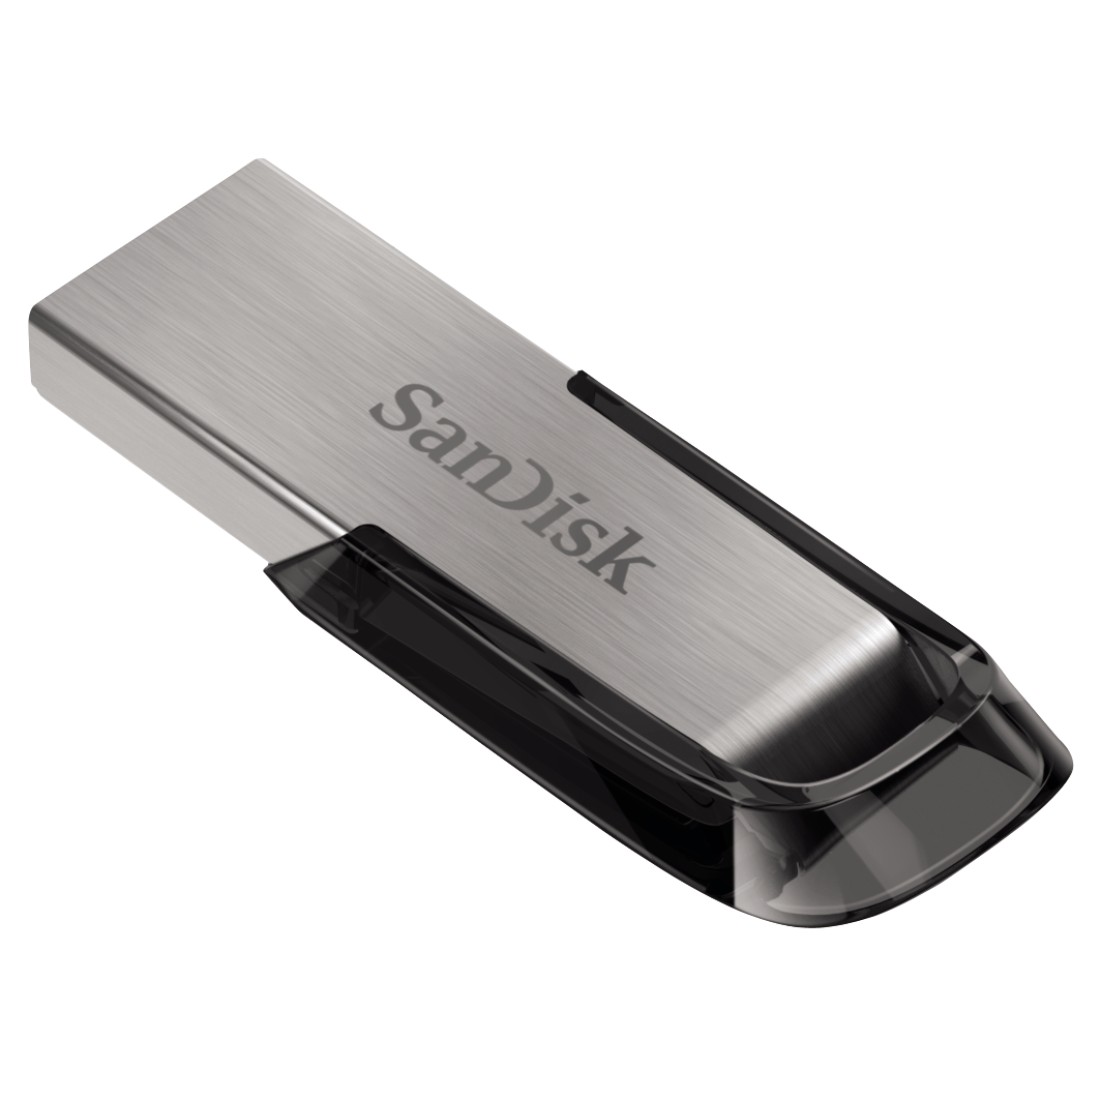 Obrázek SanDisk Ultra Flair/256GB/150MBps/USB 3.0/USB-A/Černá